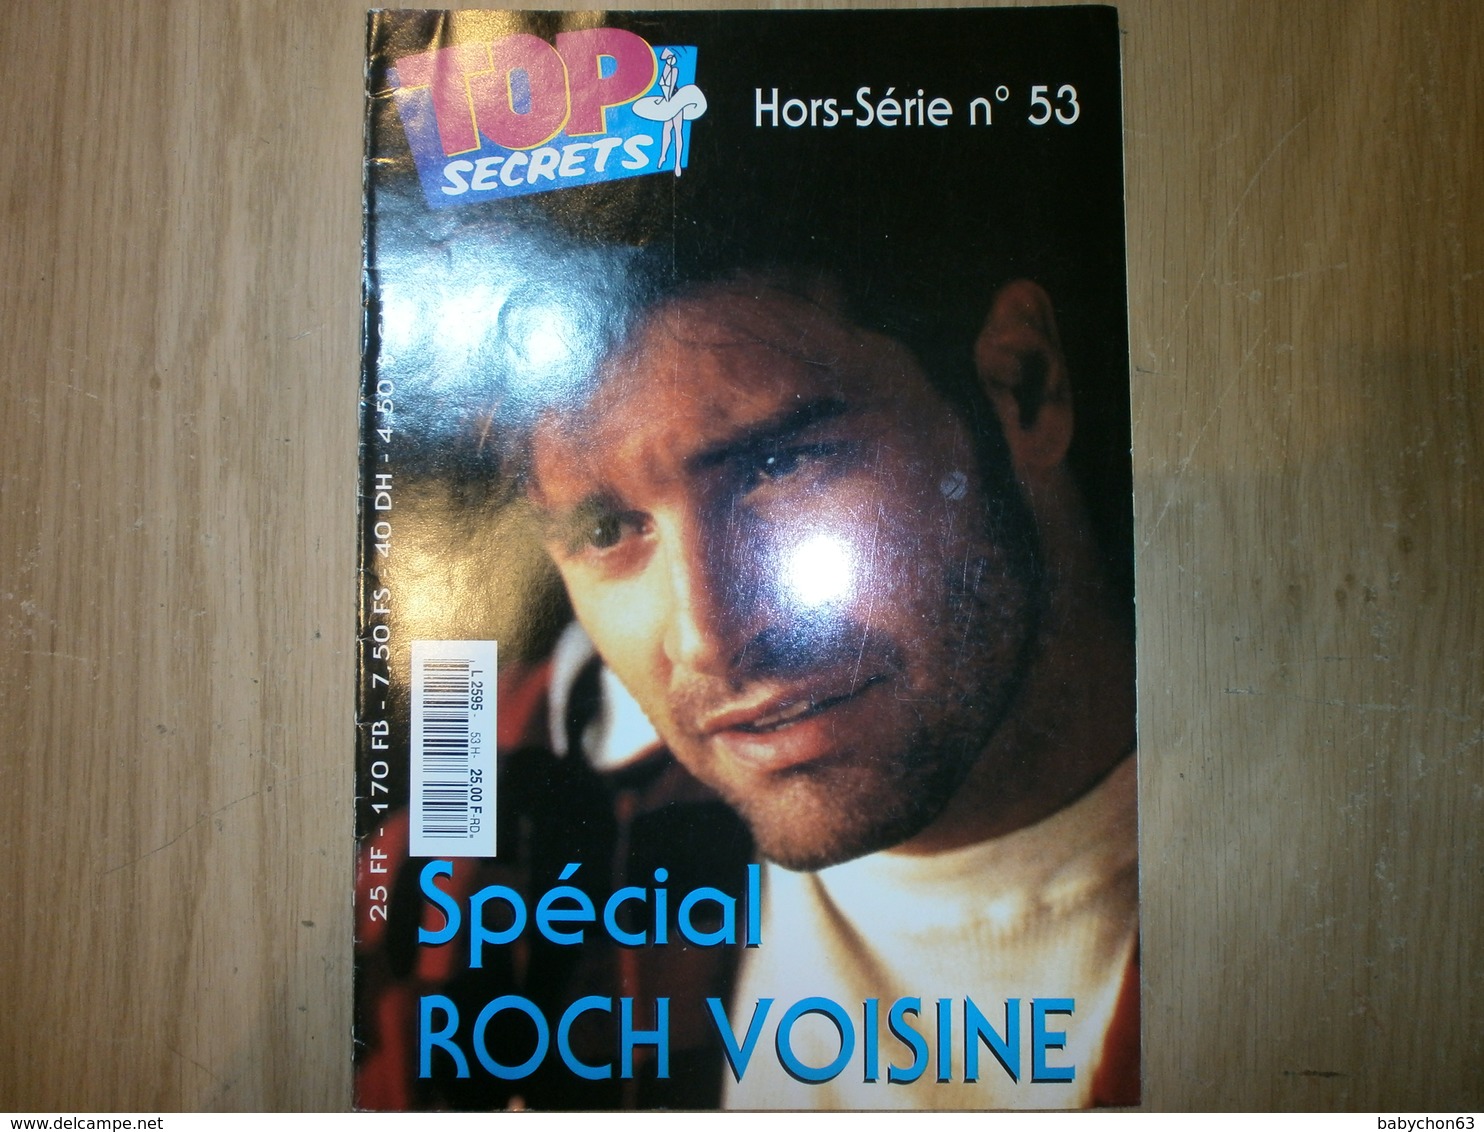 Hors-série TOP SECRETS N°53 SPECIAL ROCH VOISINE - Musique